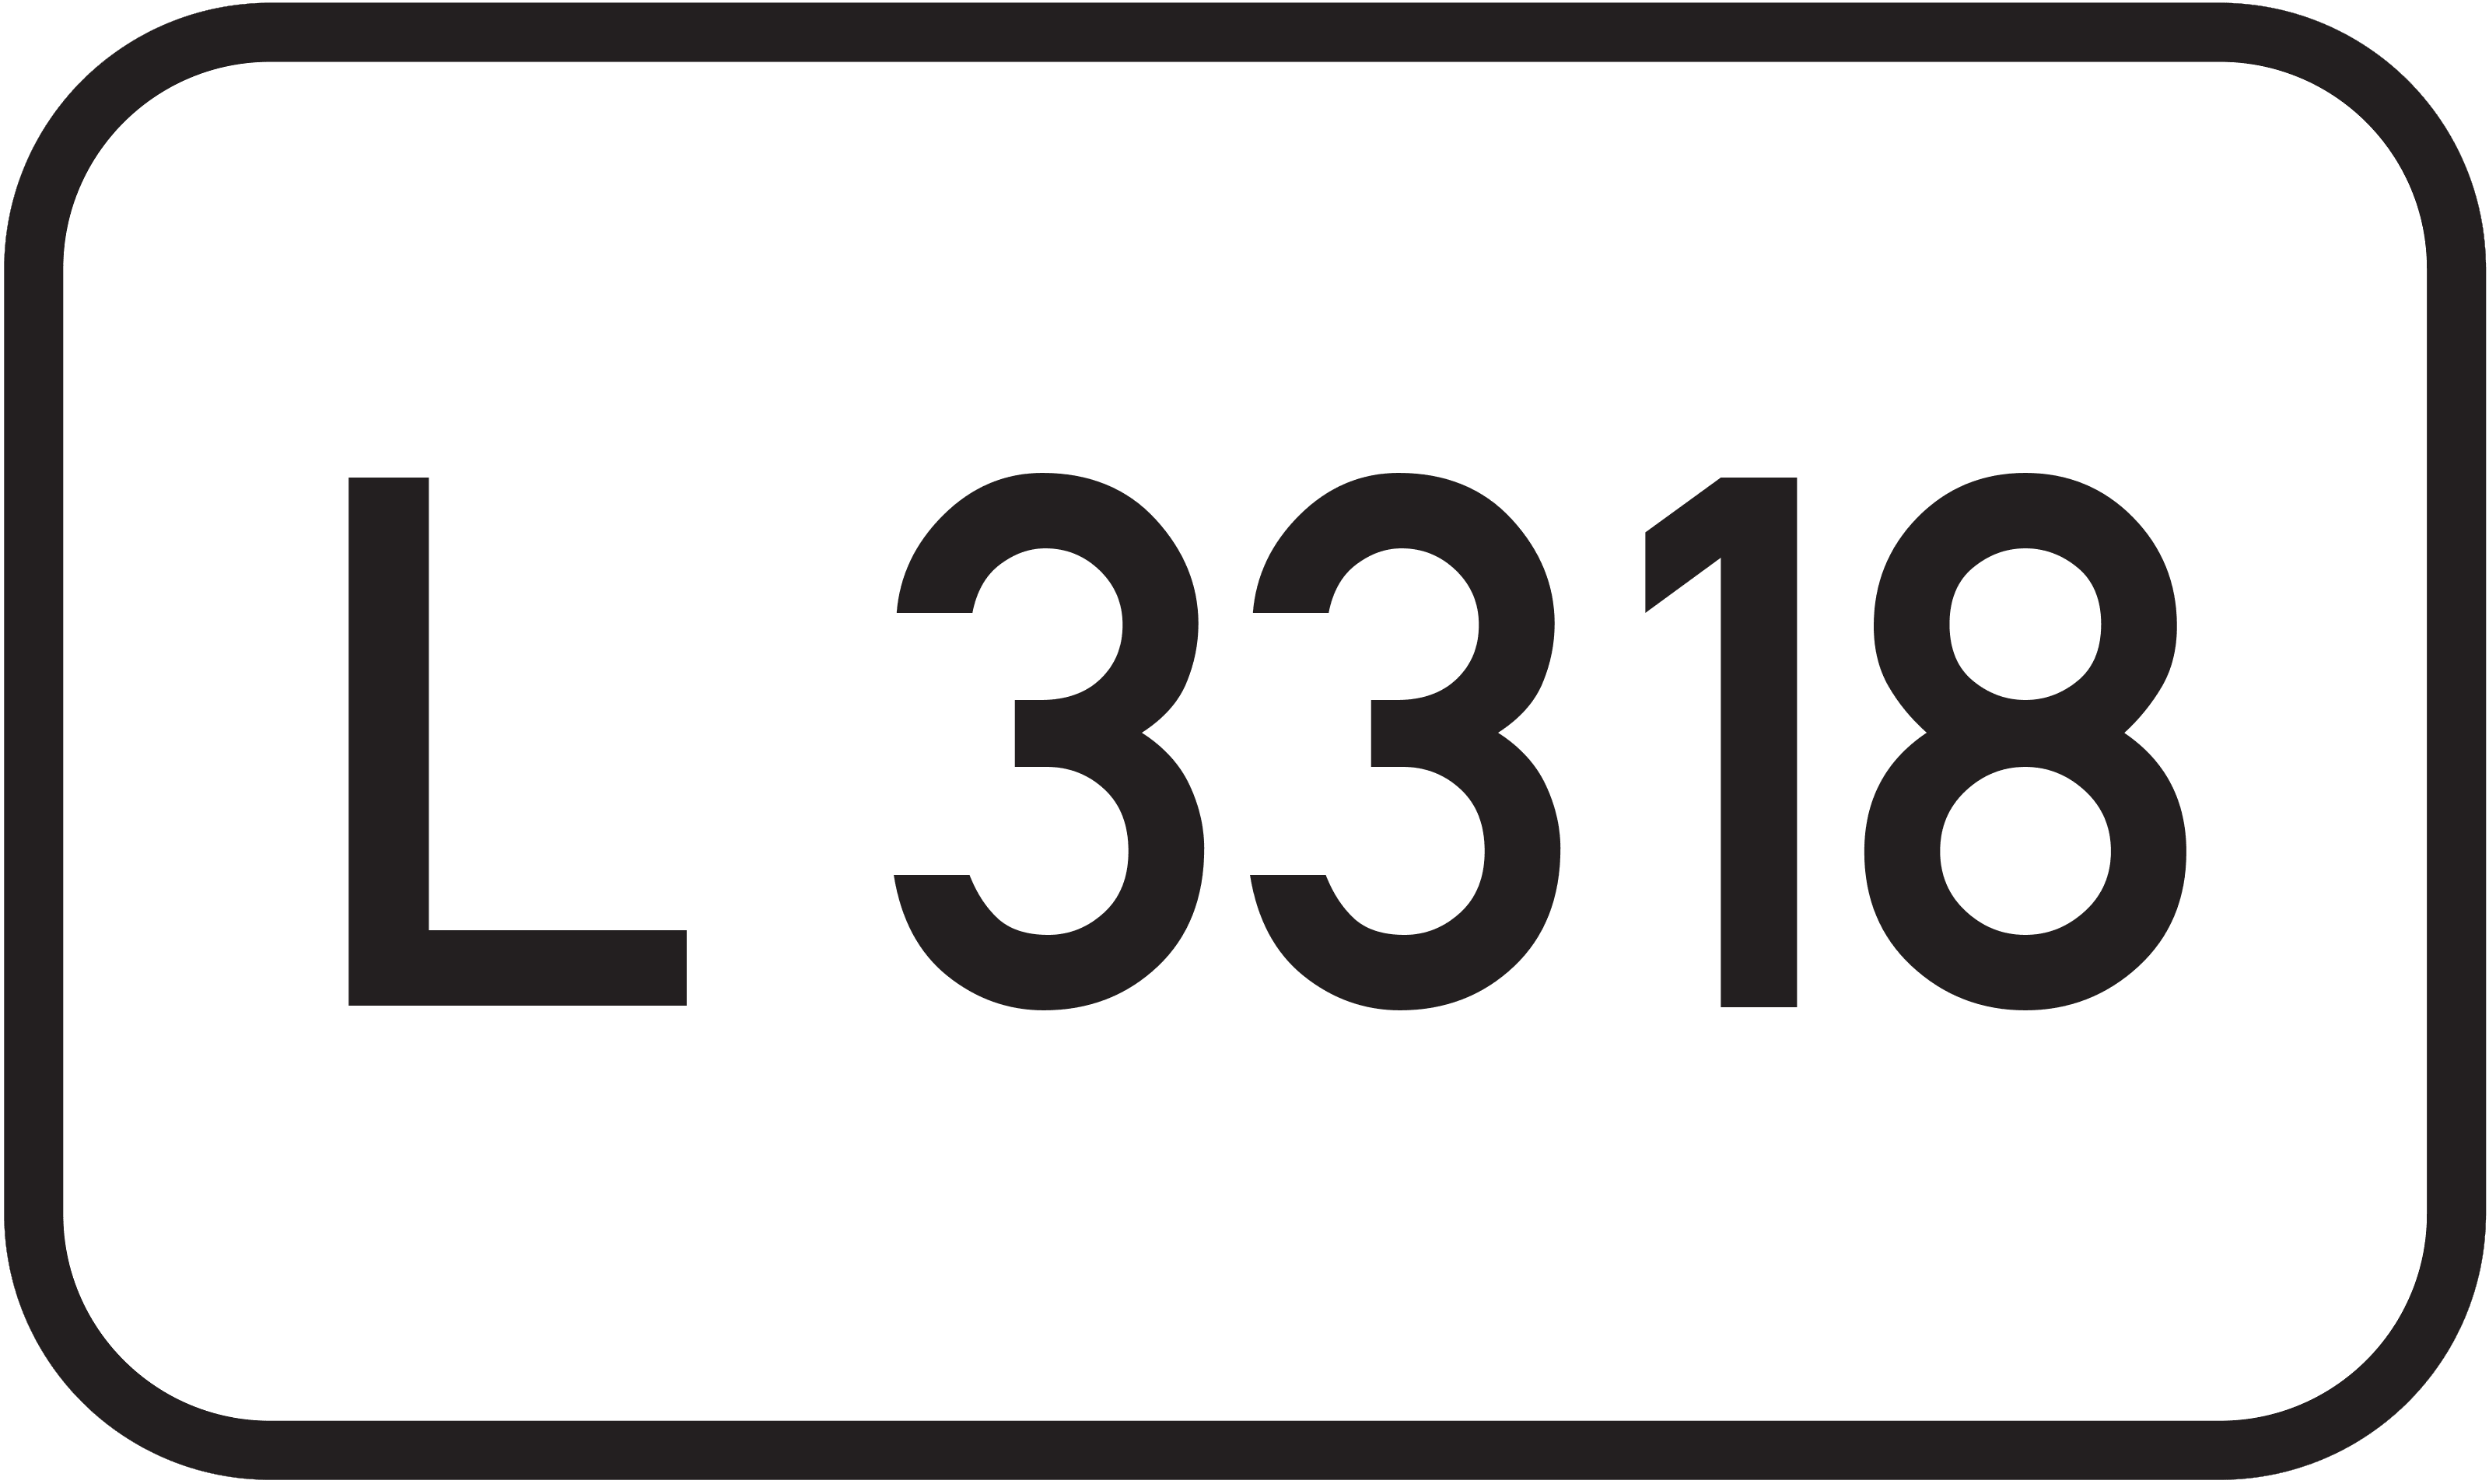 Landesstraße L 3318